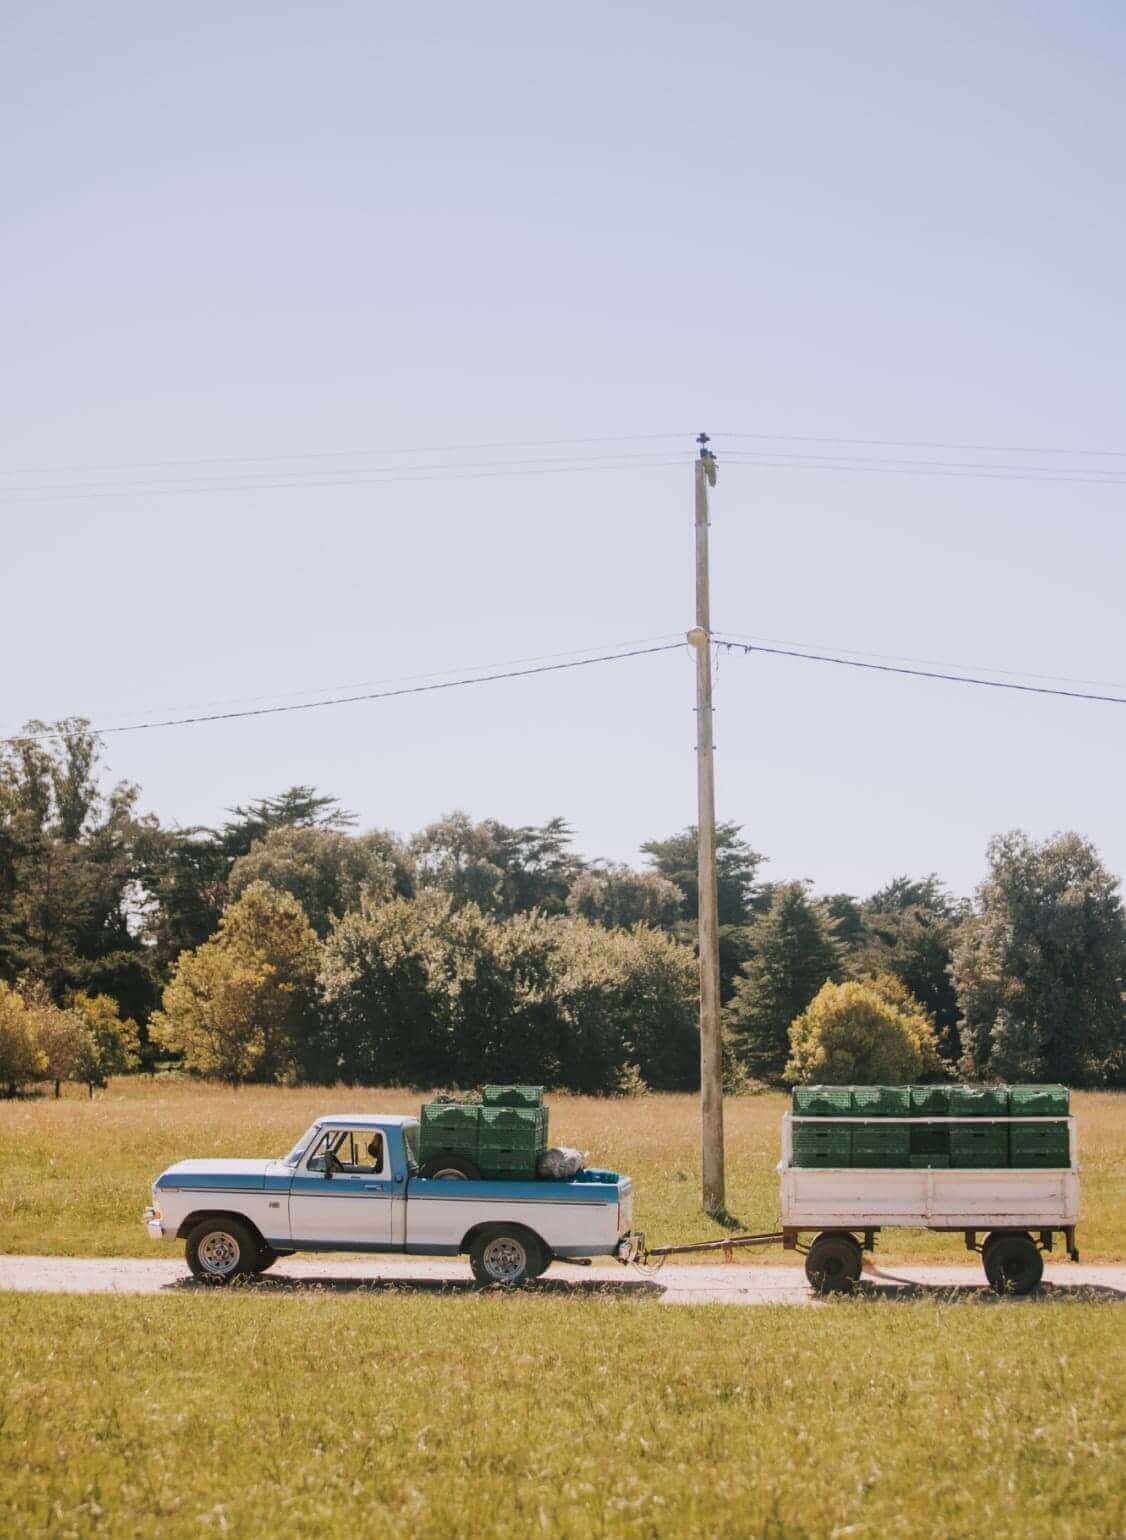 Una foto de una camioneta acarreando un conteiner mediano que transporta mercancía por un camino, el paisaje de alrededor es campestre. Se observa el pasto verde bien cortado con árboles al fondo y al lado de la ruta un poste de electricidad.